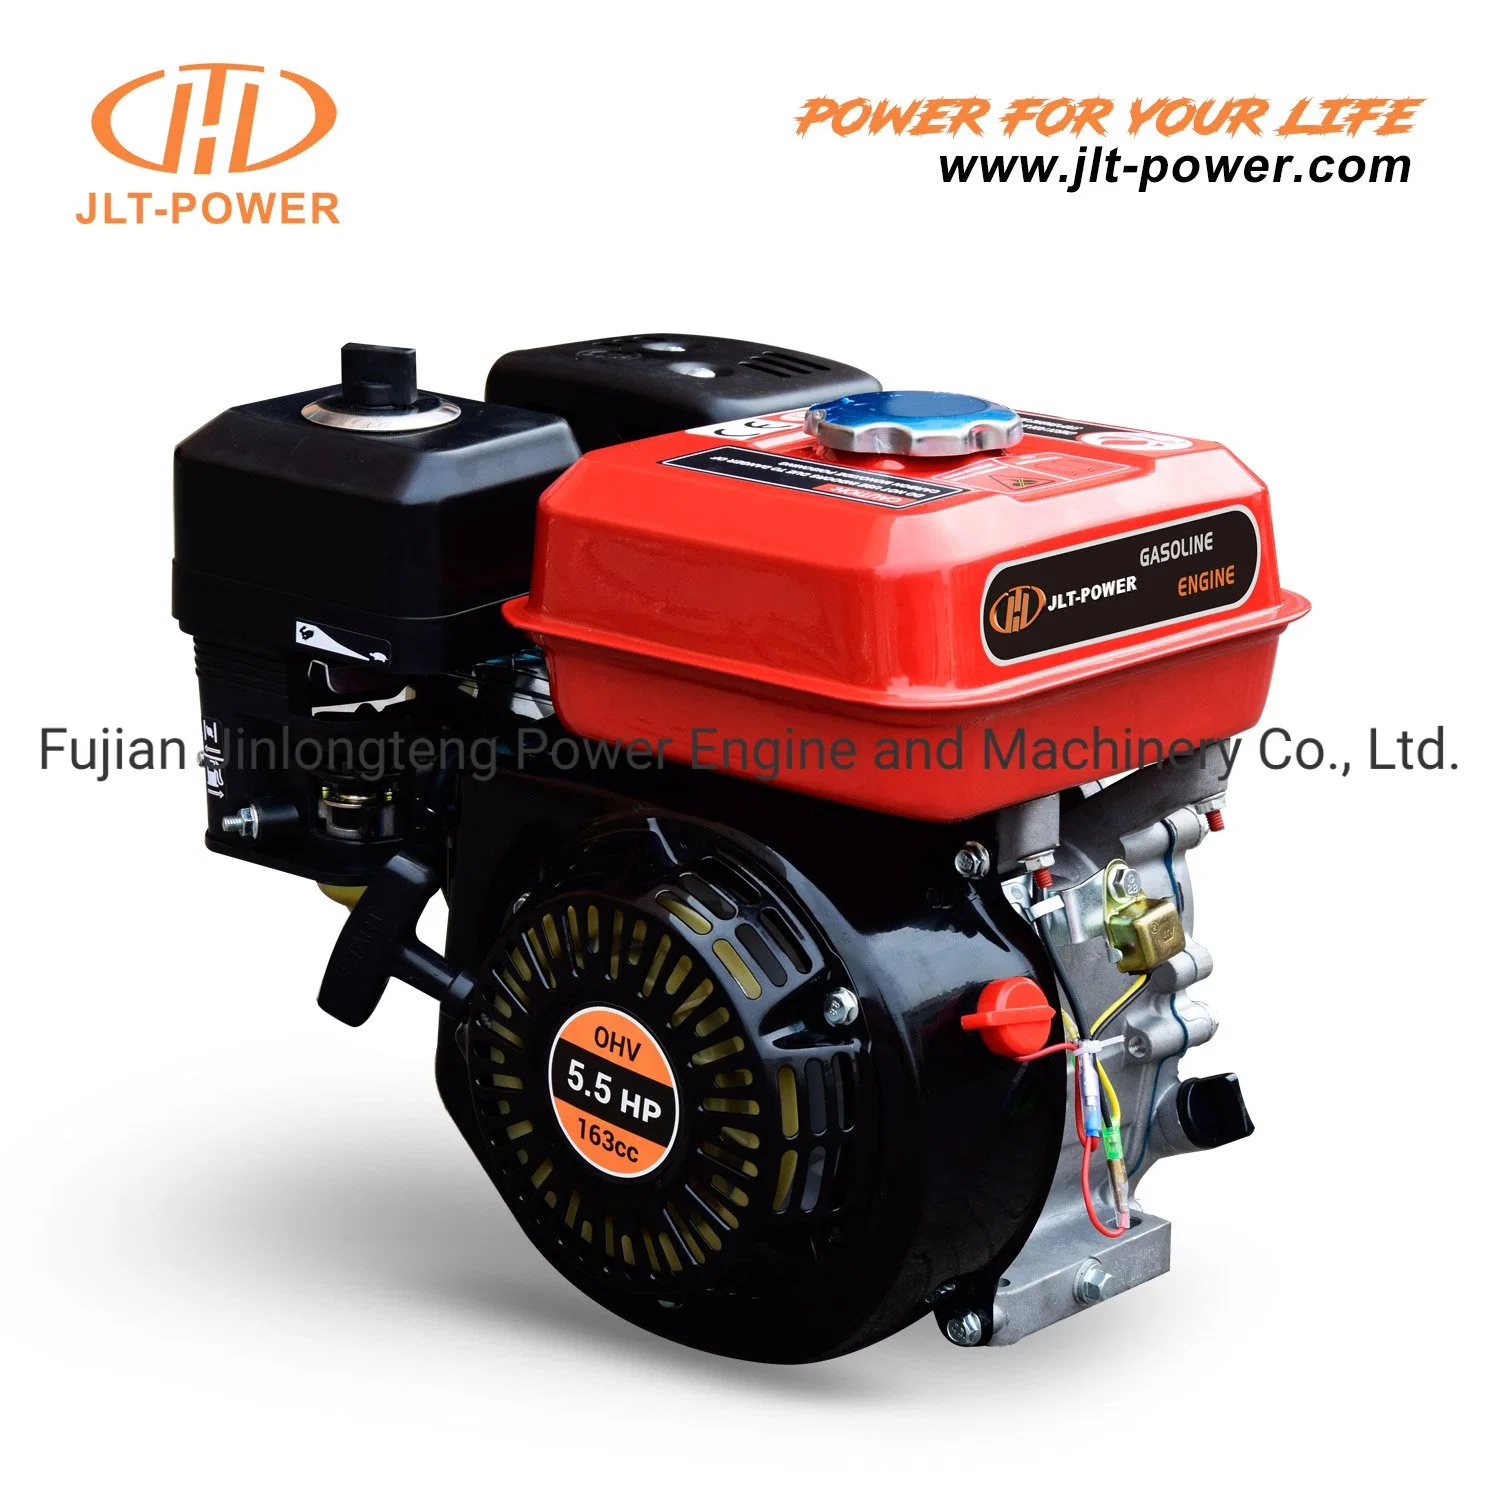 Motor a gasolina Fogão de cilindro único OHV a 4 tempos refrigerado a ar 168f 163 cc 55HP GX160 com embraiagem